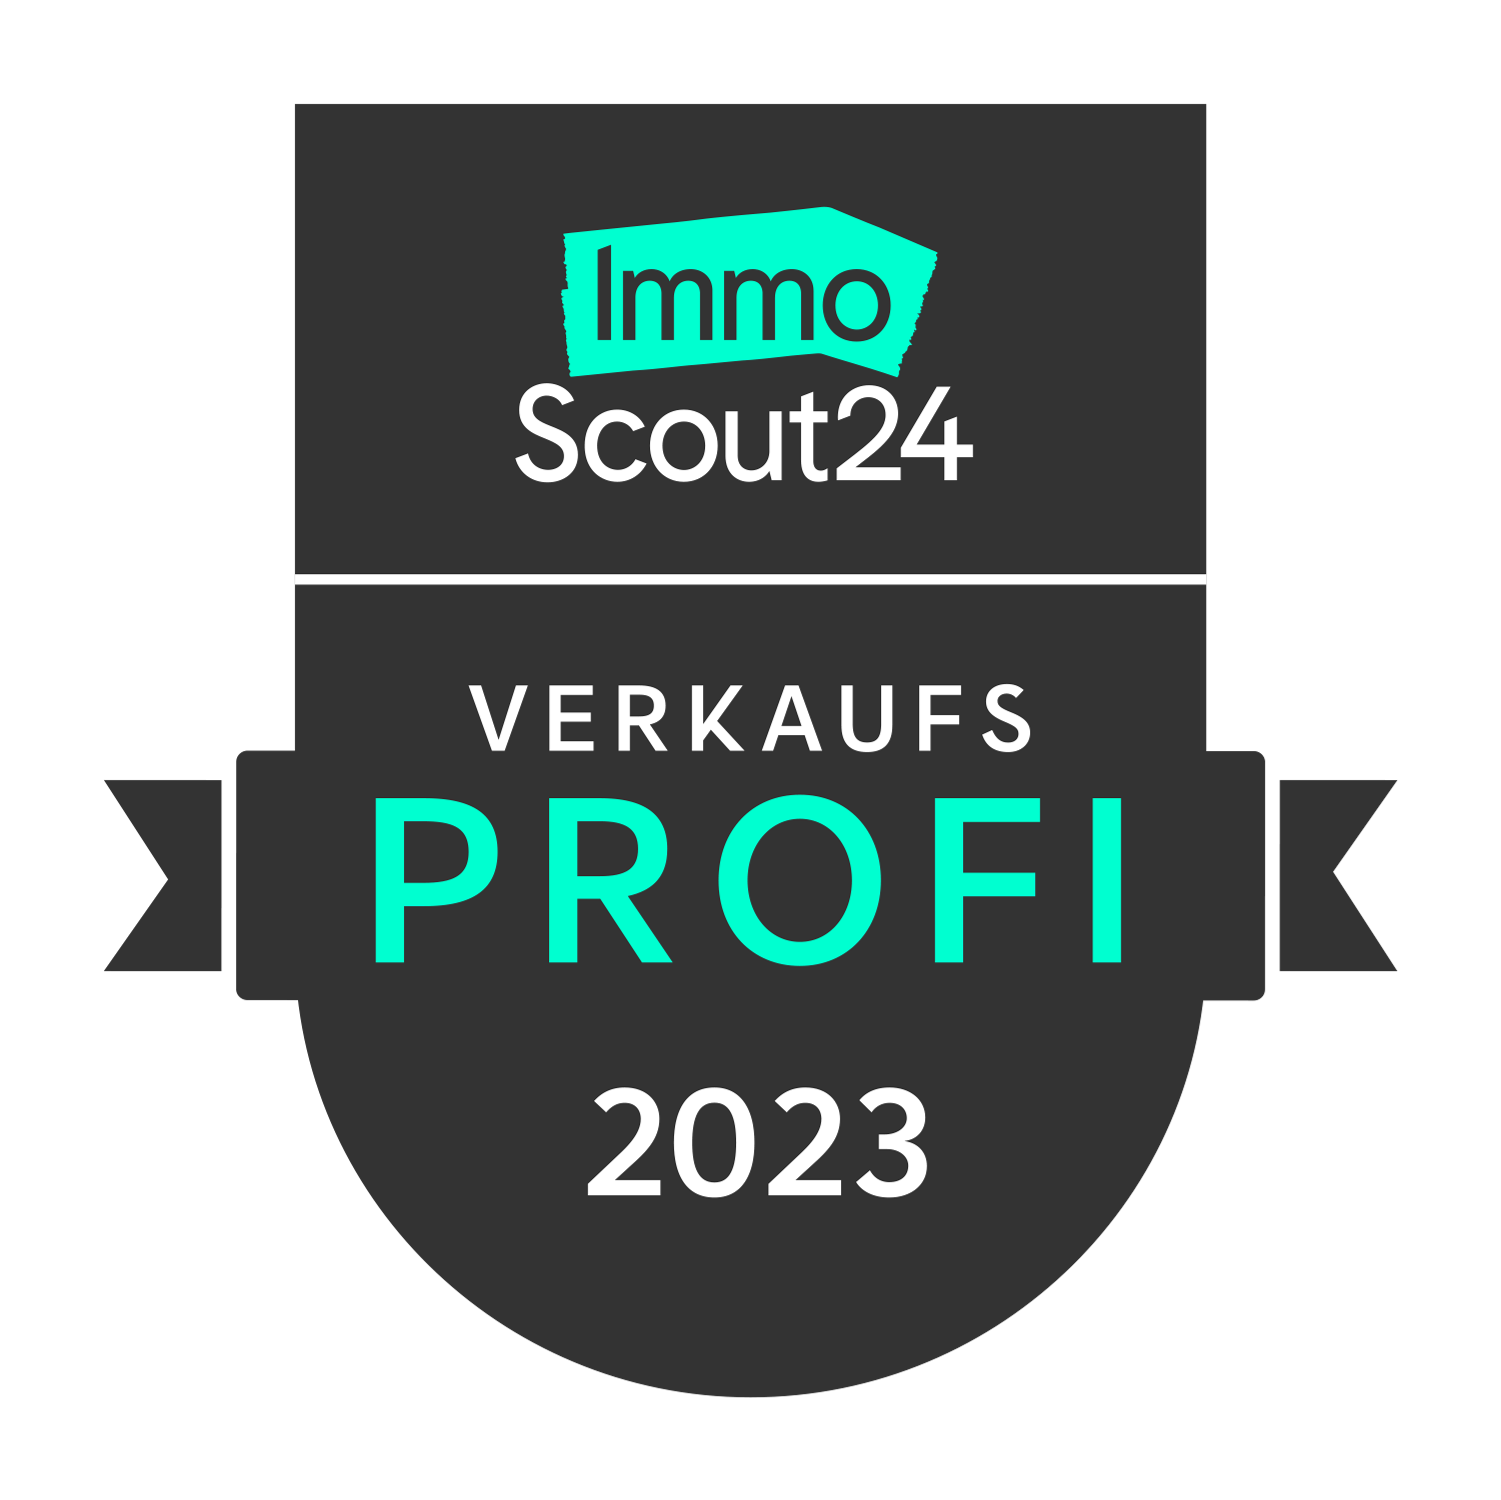 ImmoScout24 Verkaufsprofi 2023